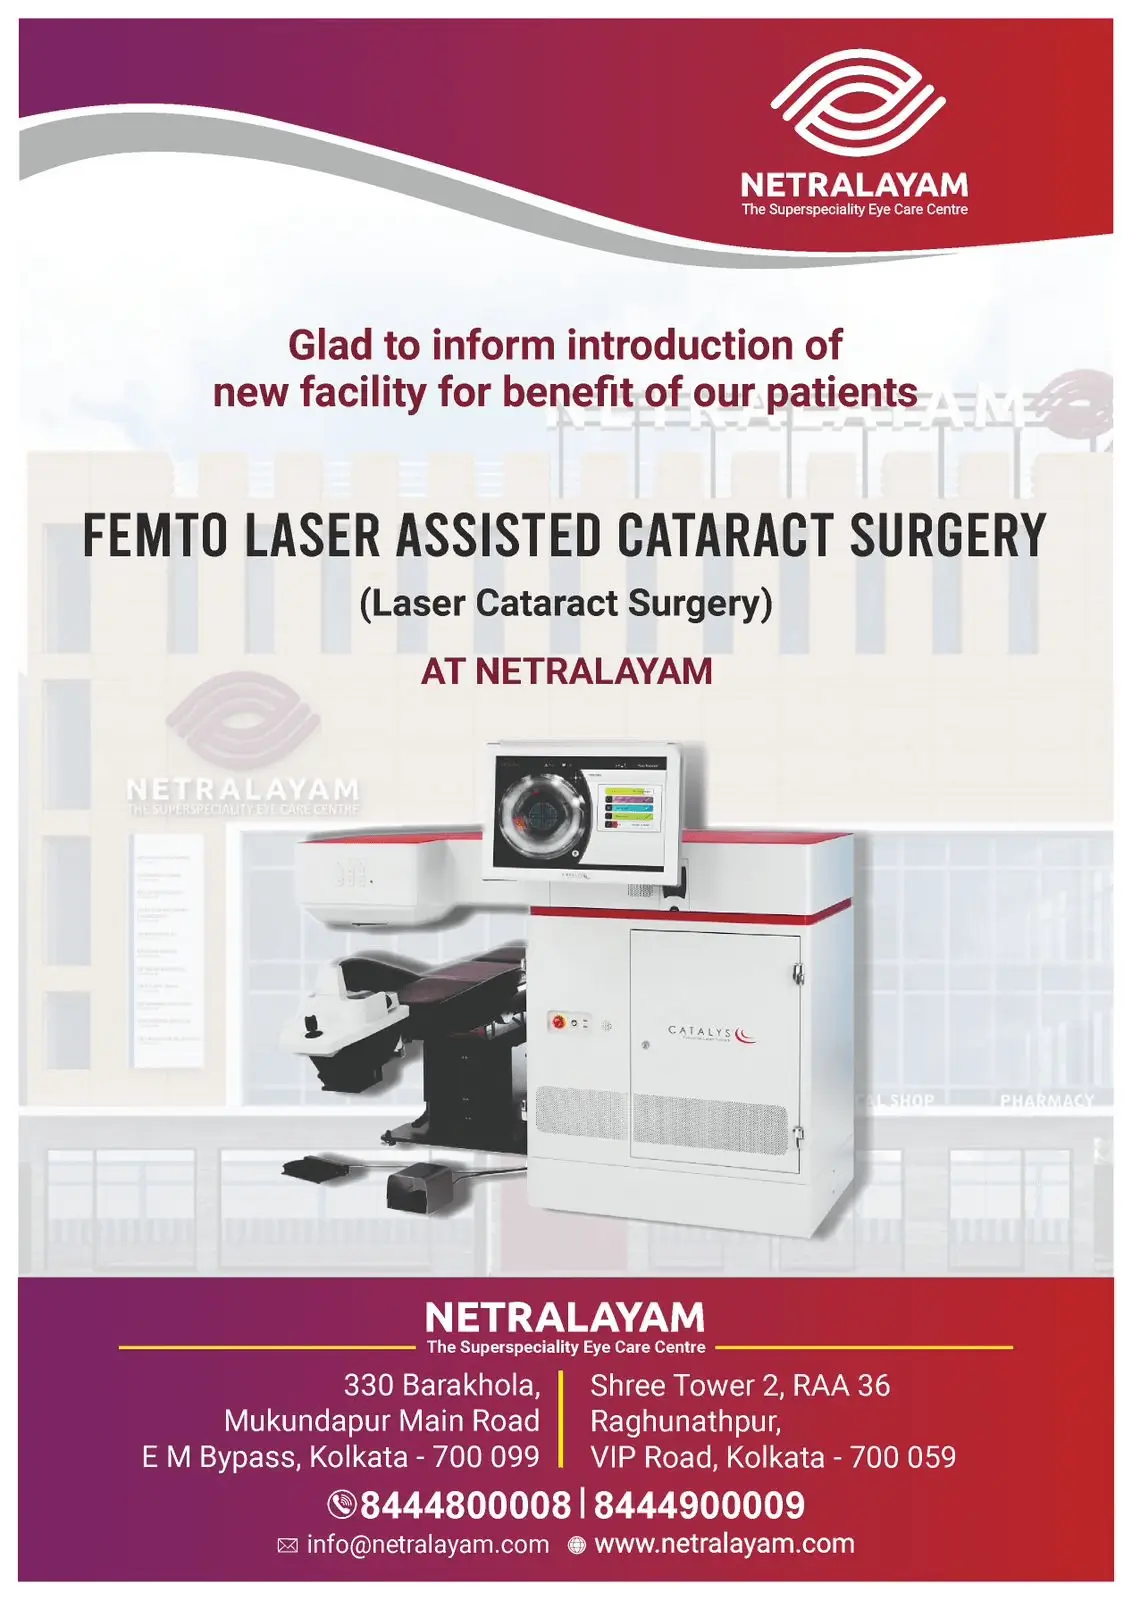 Netralayam Laser cataract Surgery